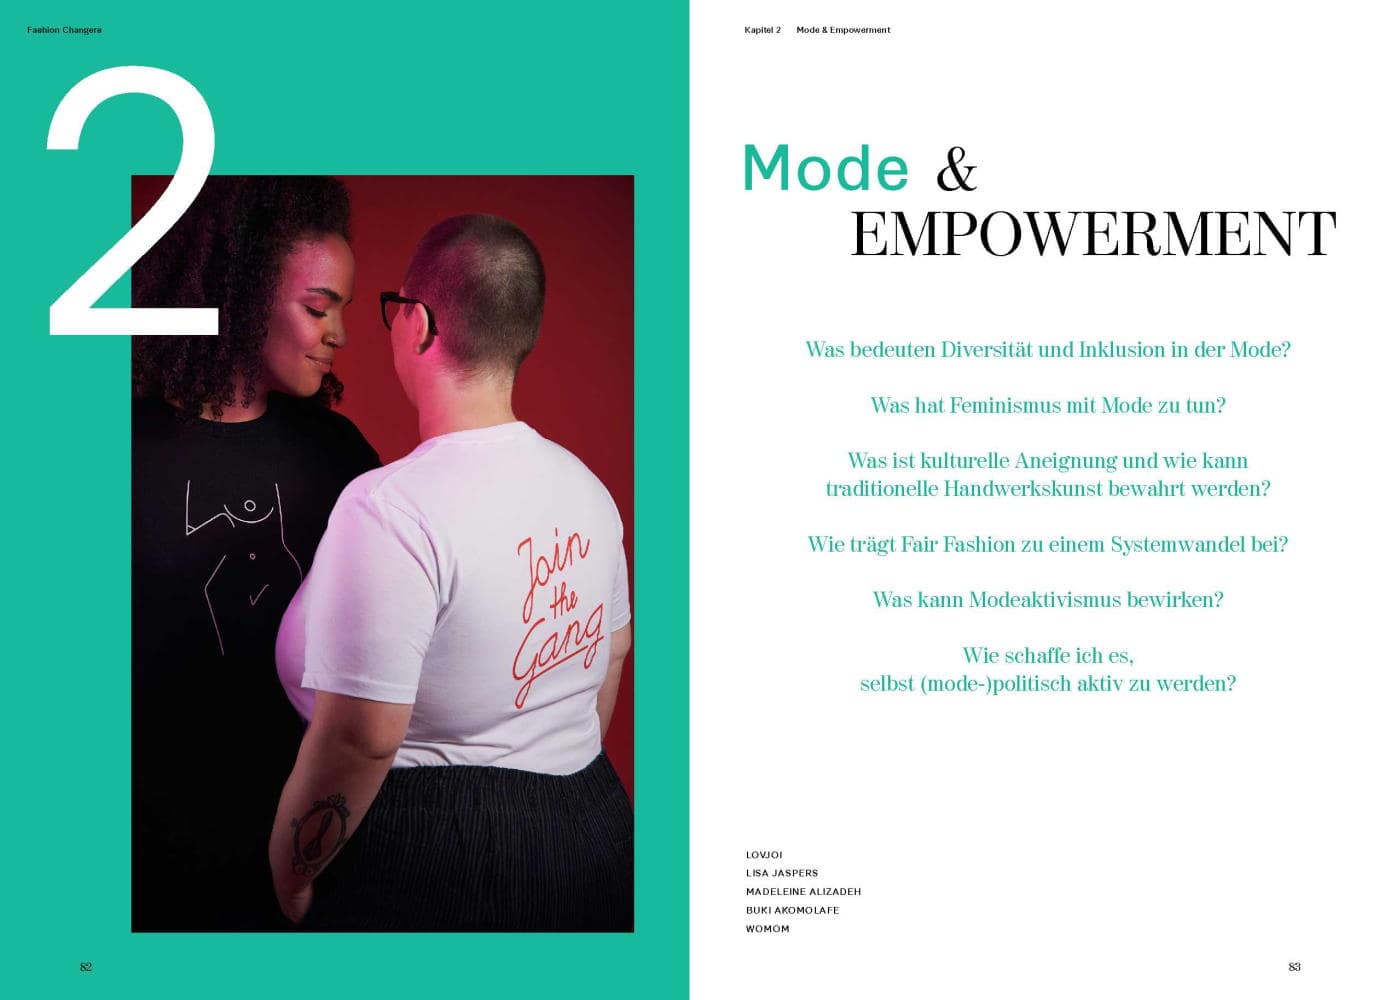 Kapitel 2 des Buchs. Mode und Empowerment.